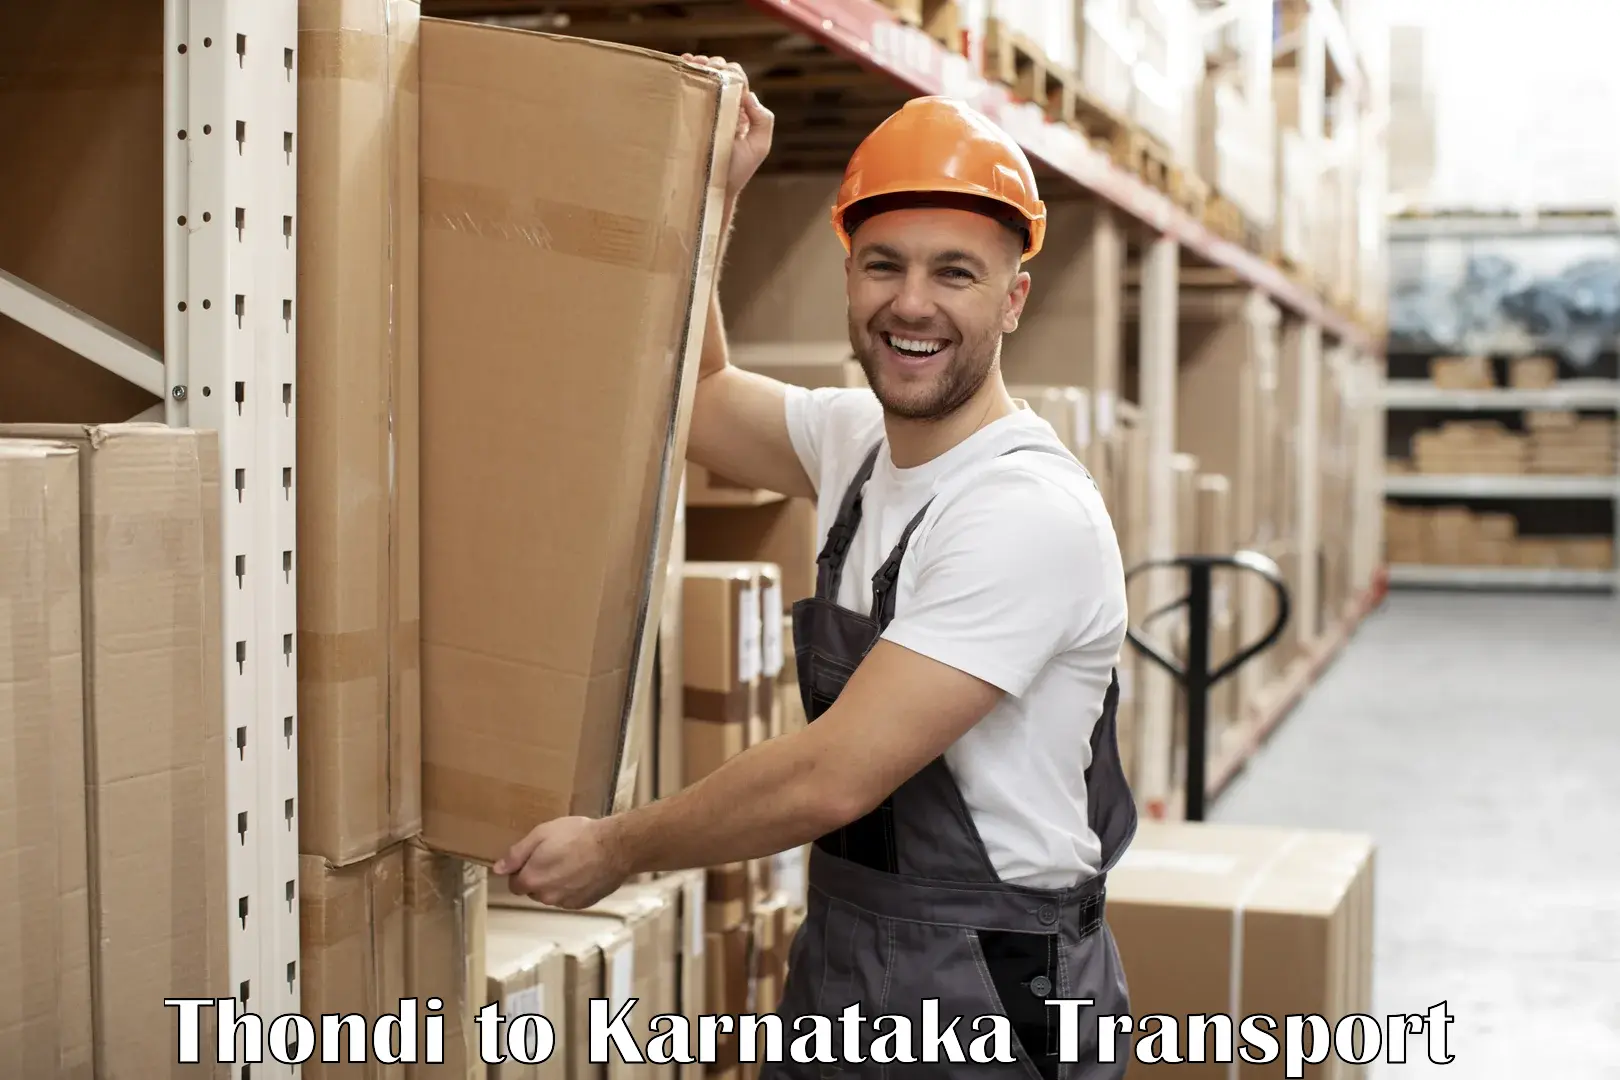 Truck transport companies in India Thondi to Kanjarakatte